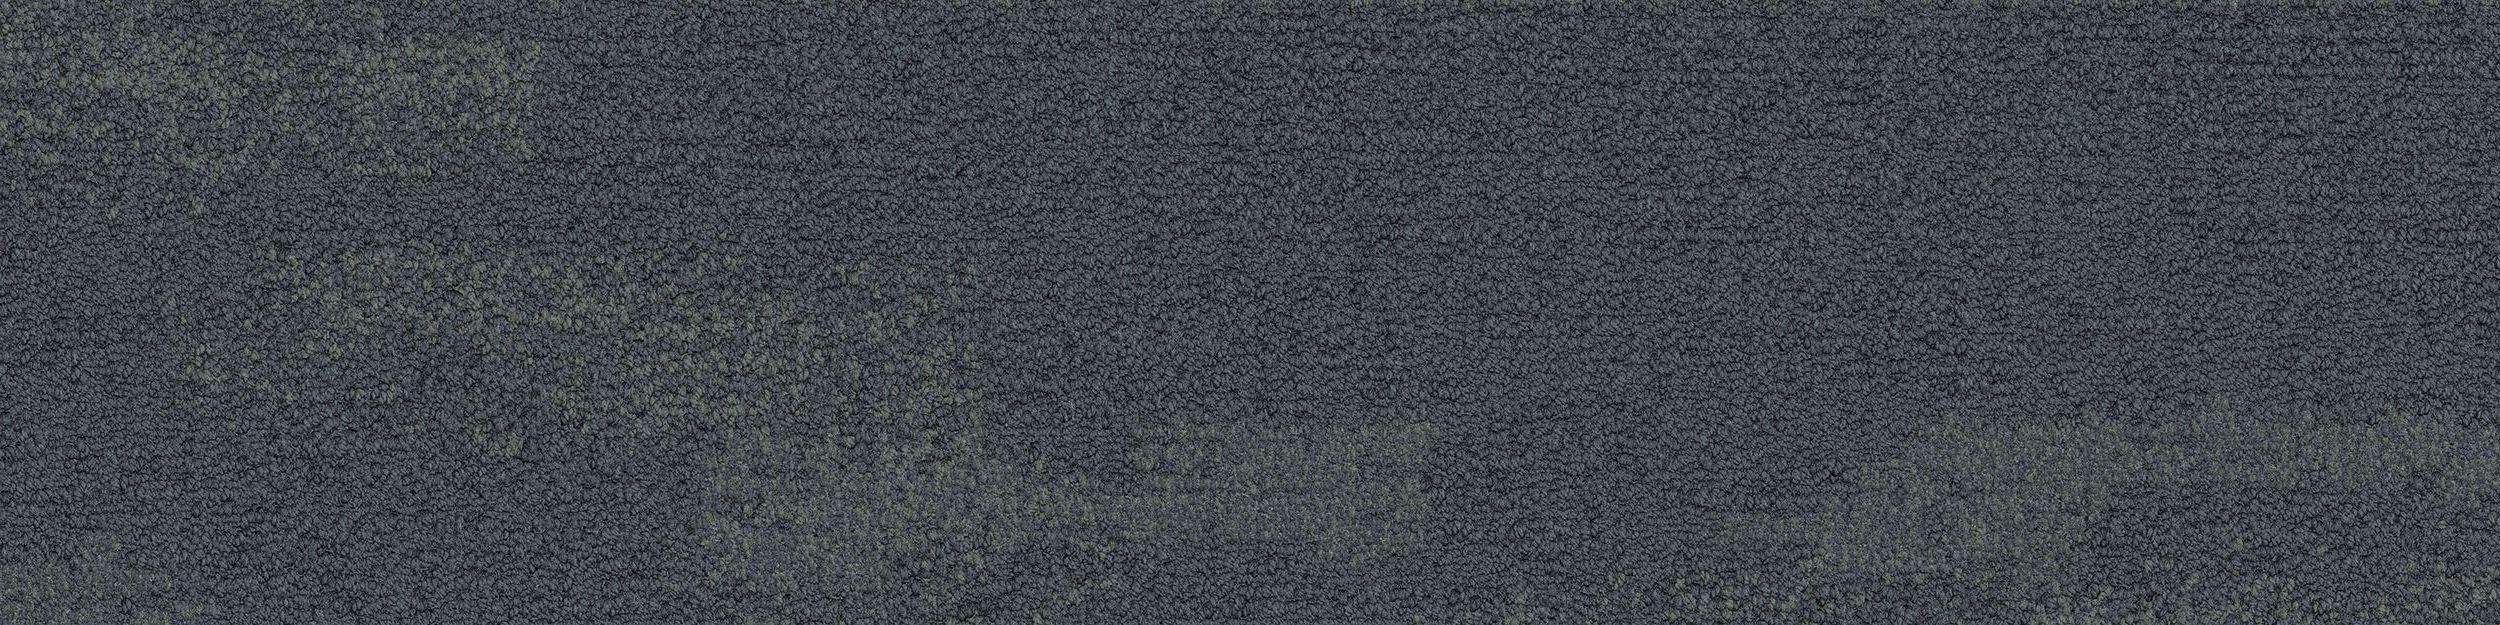 NF401 Carpet Tile In Shale número de imagen 2